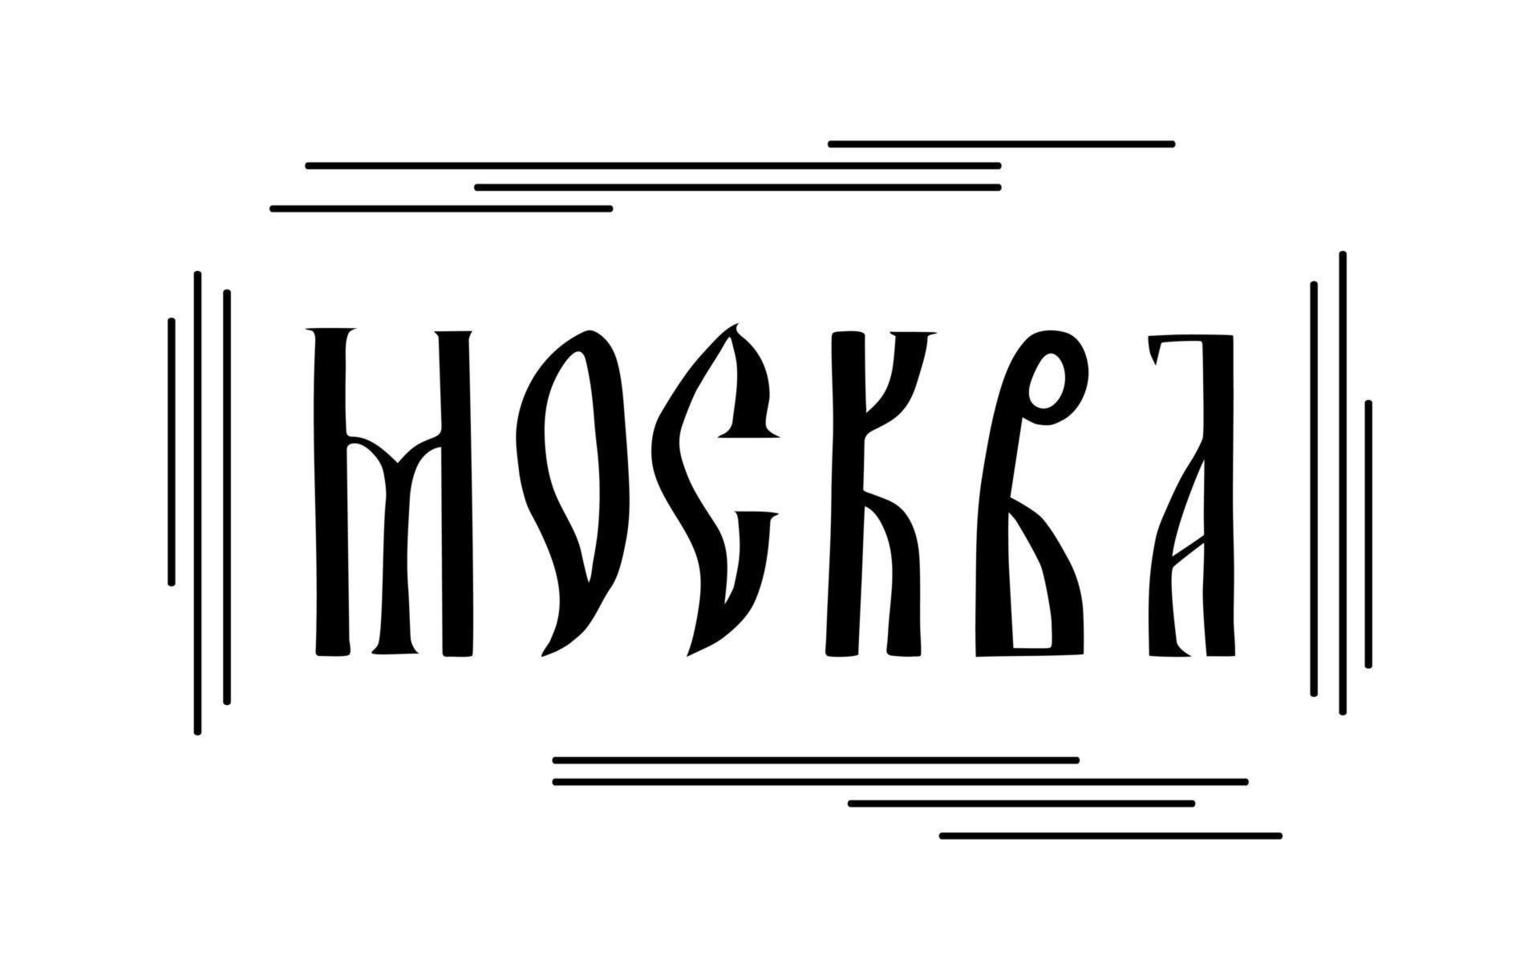 l'iscrizione in russo. il nome della città di mosca. scrittura a mano stilizzata in antiche lettere slave vettore